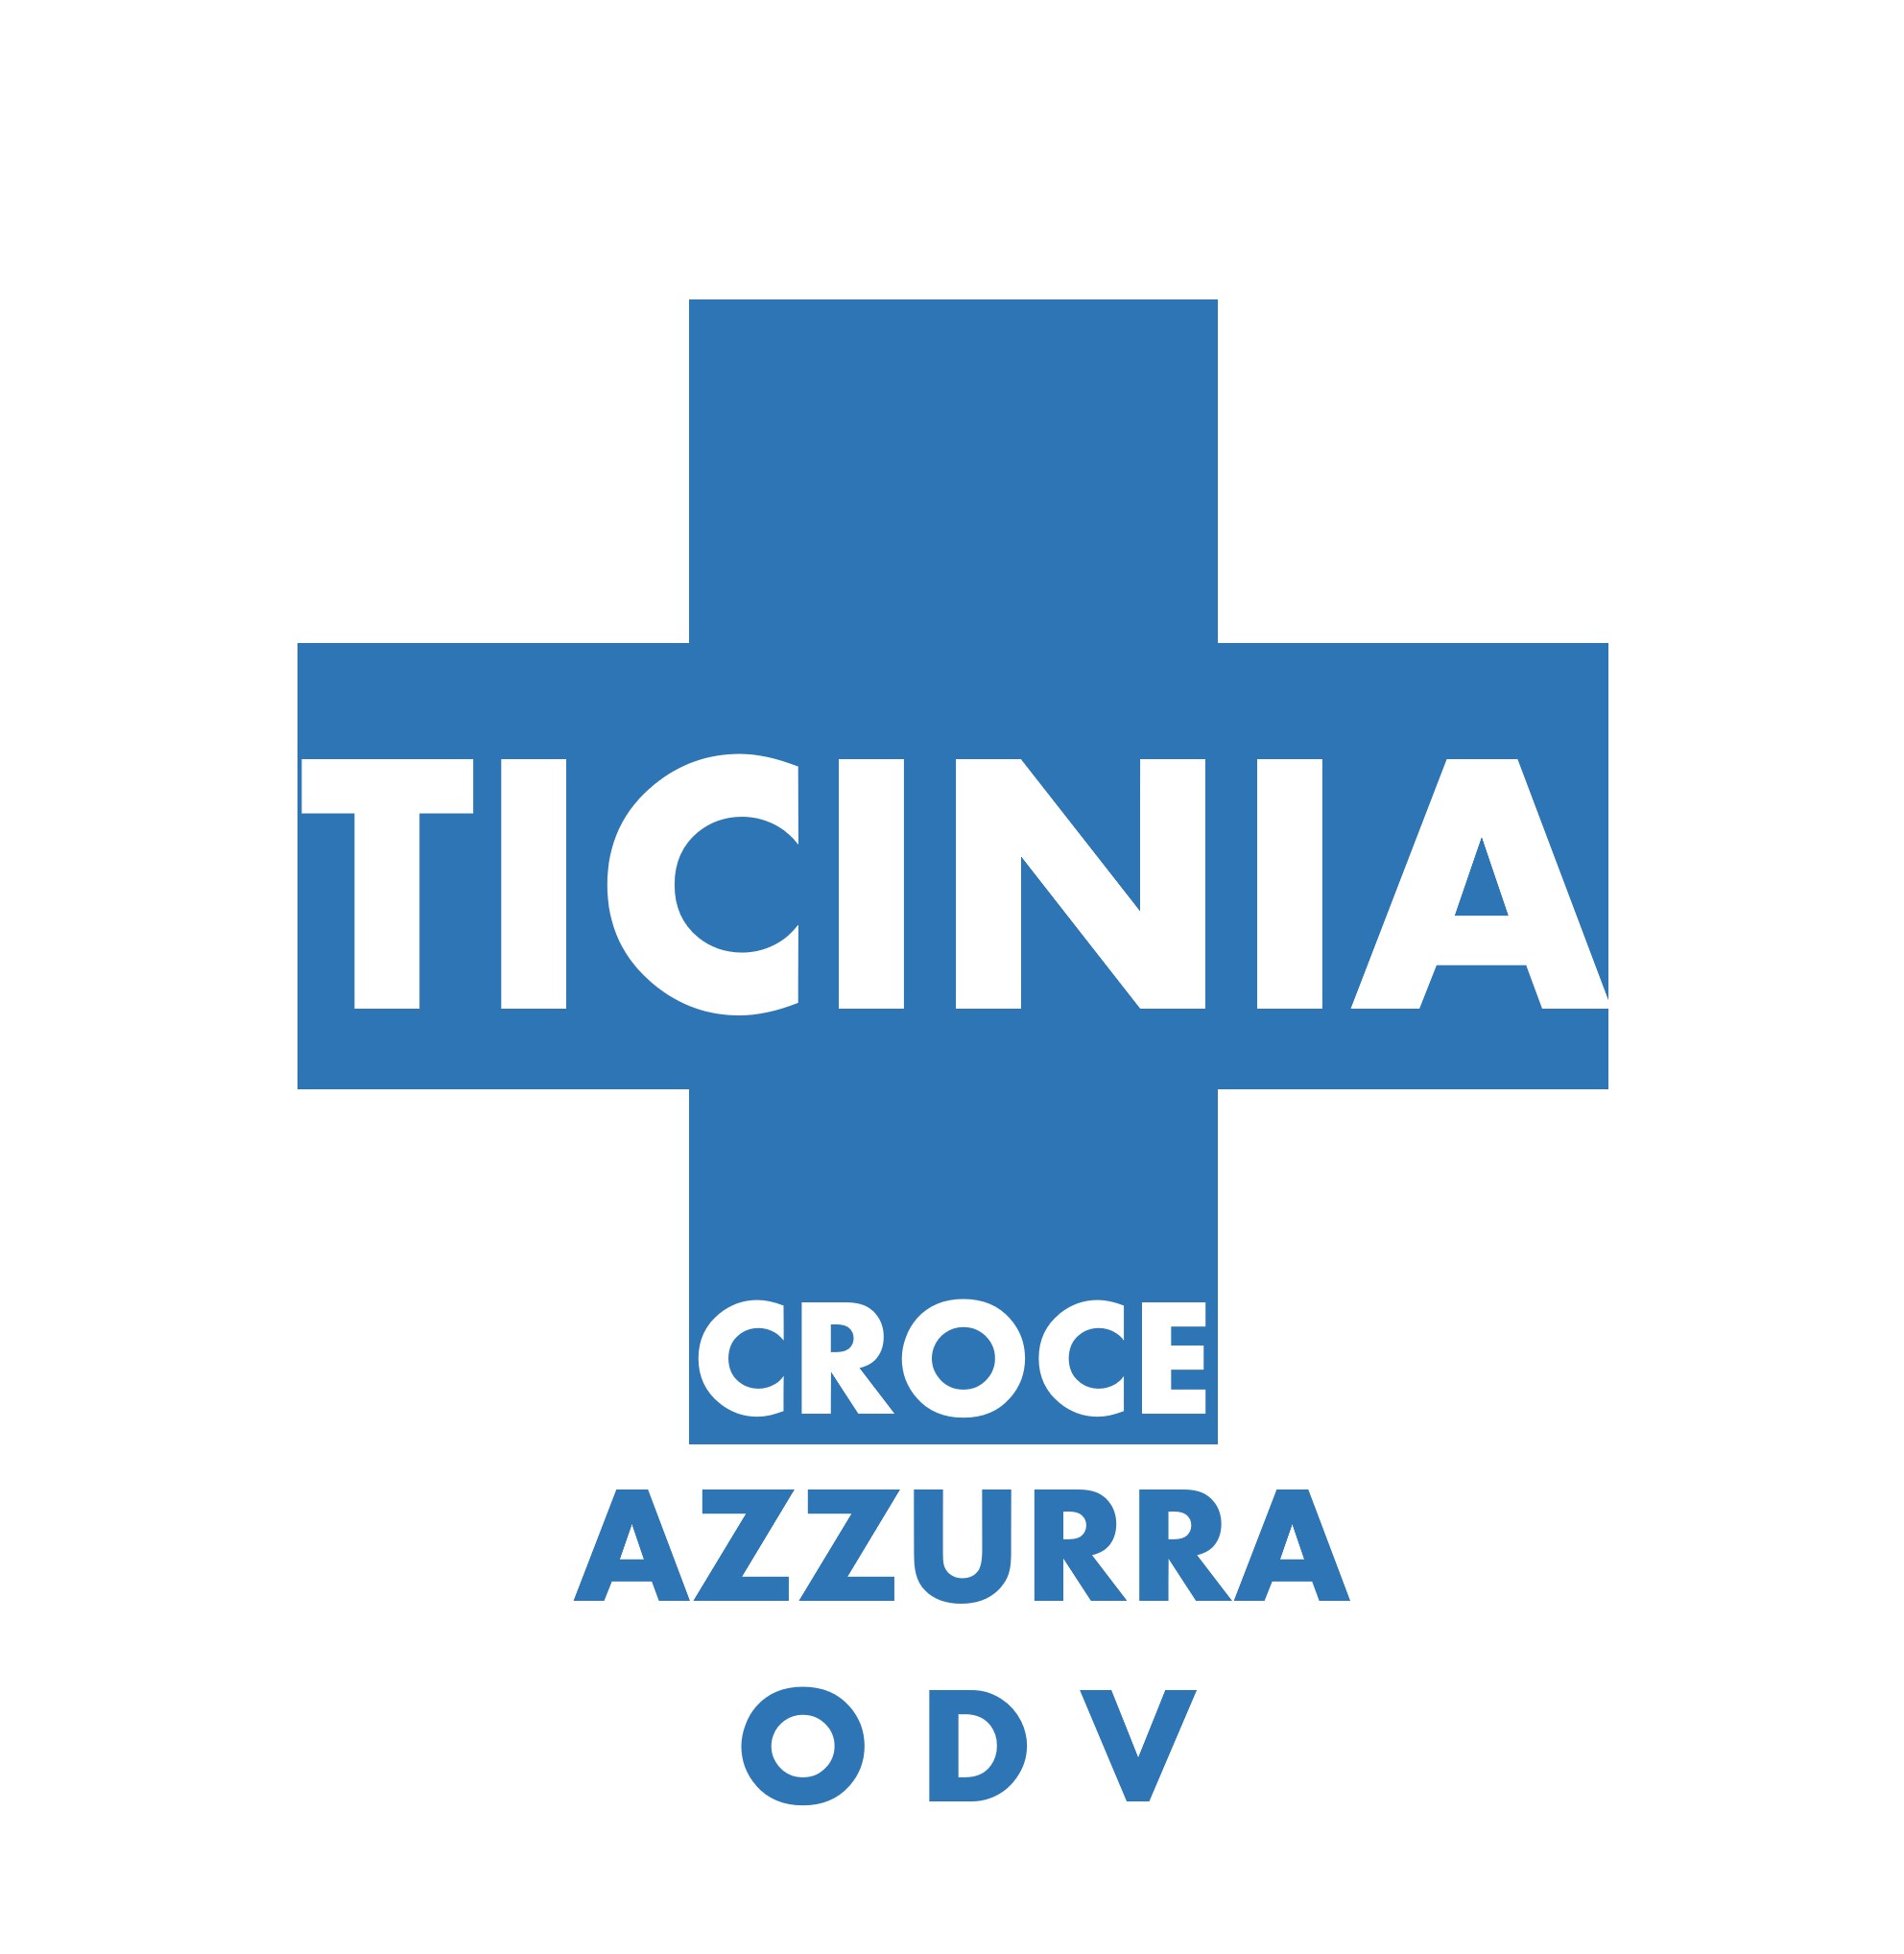 Archivio Storico Croce Azzurra Ticinia - Croce Azzurra Ticinia ODV - 2013/15 - Corrispondenza Personalità